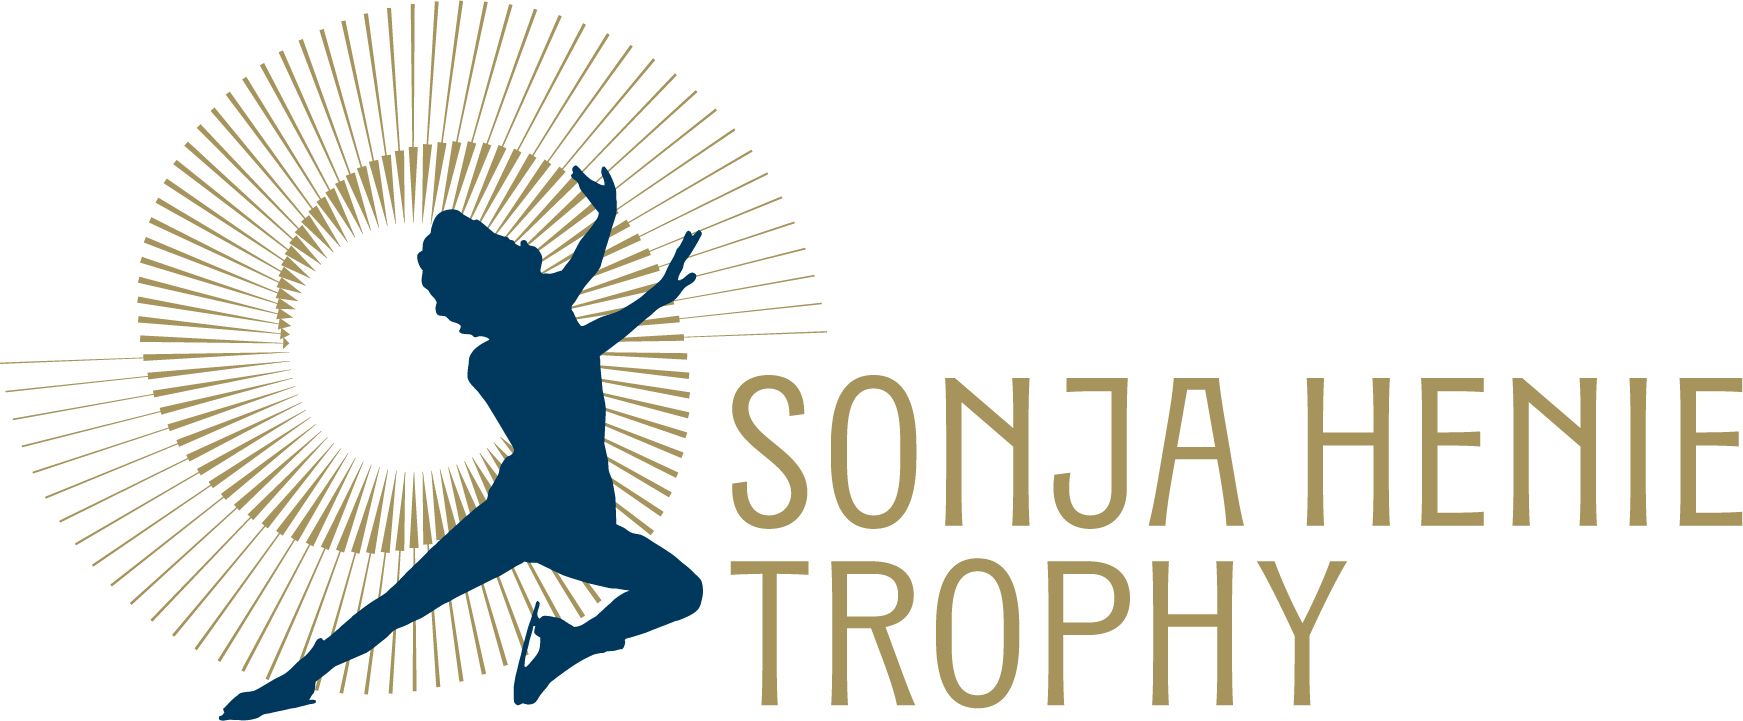 Sonja_hennie_trophy_logo_bredde.jpg